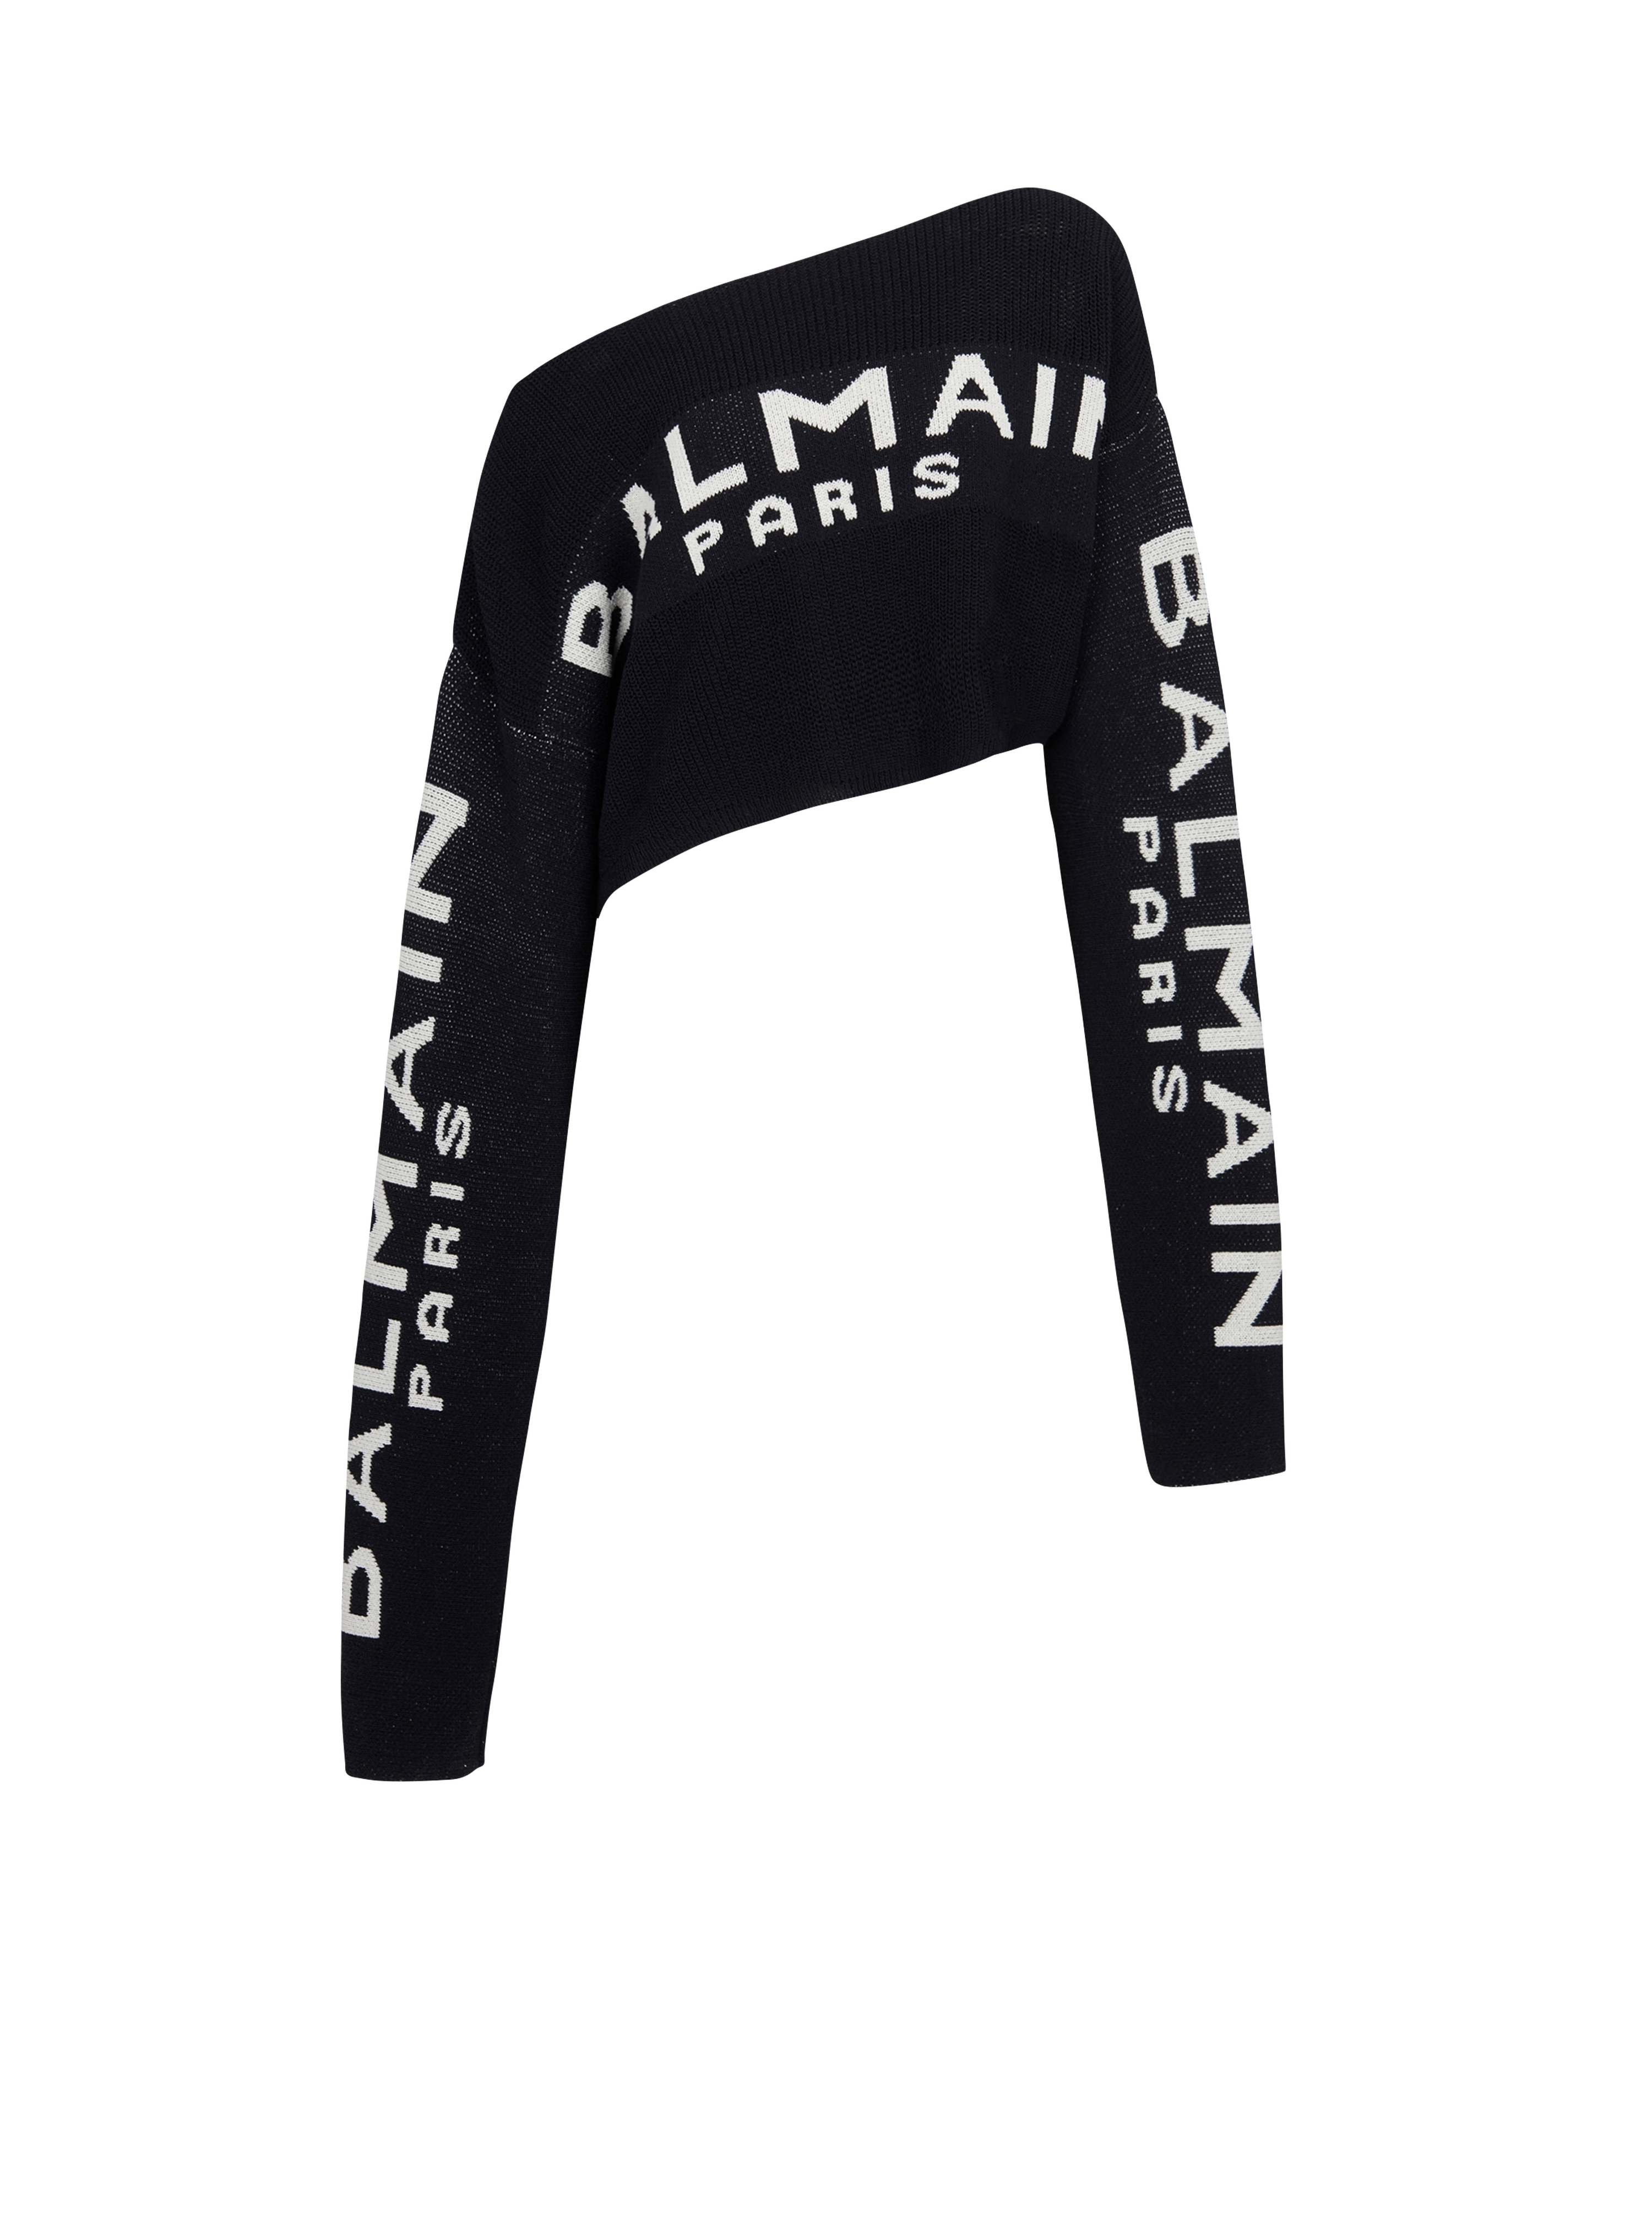 Pullover corto in maglia con logo Balmain graffiti, nero